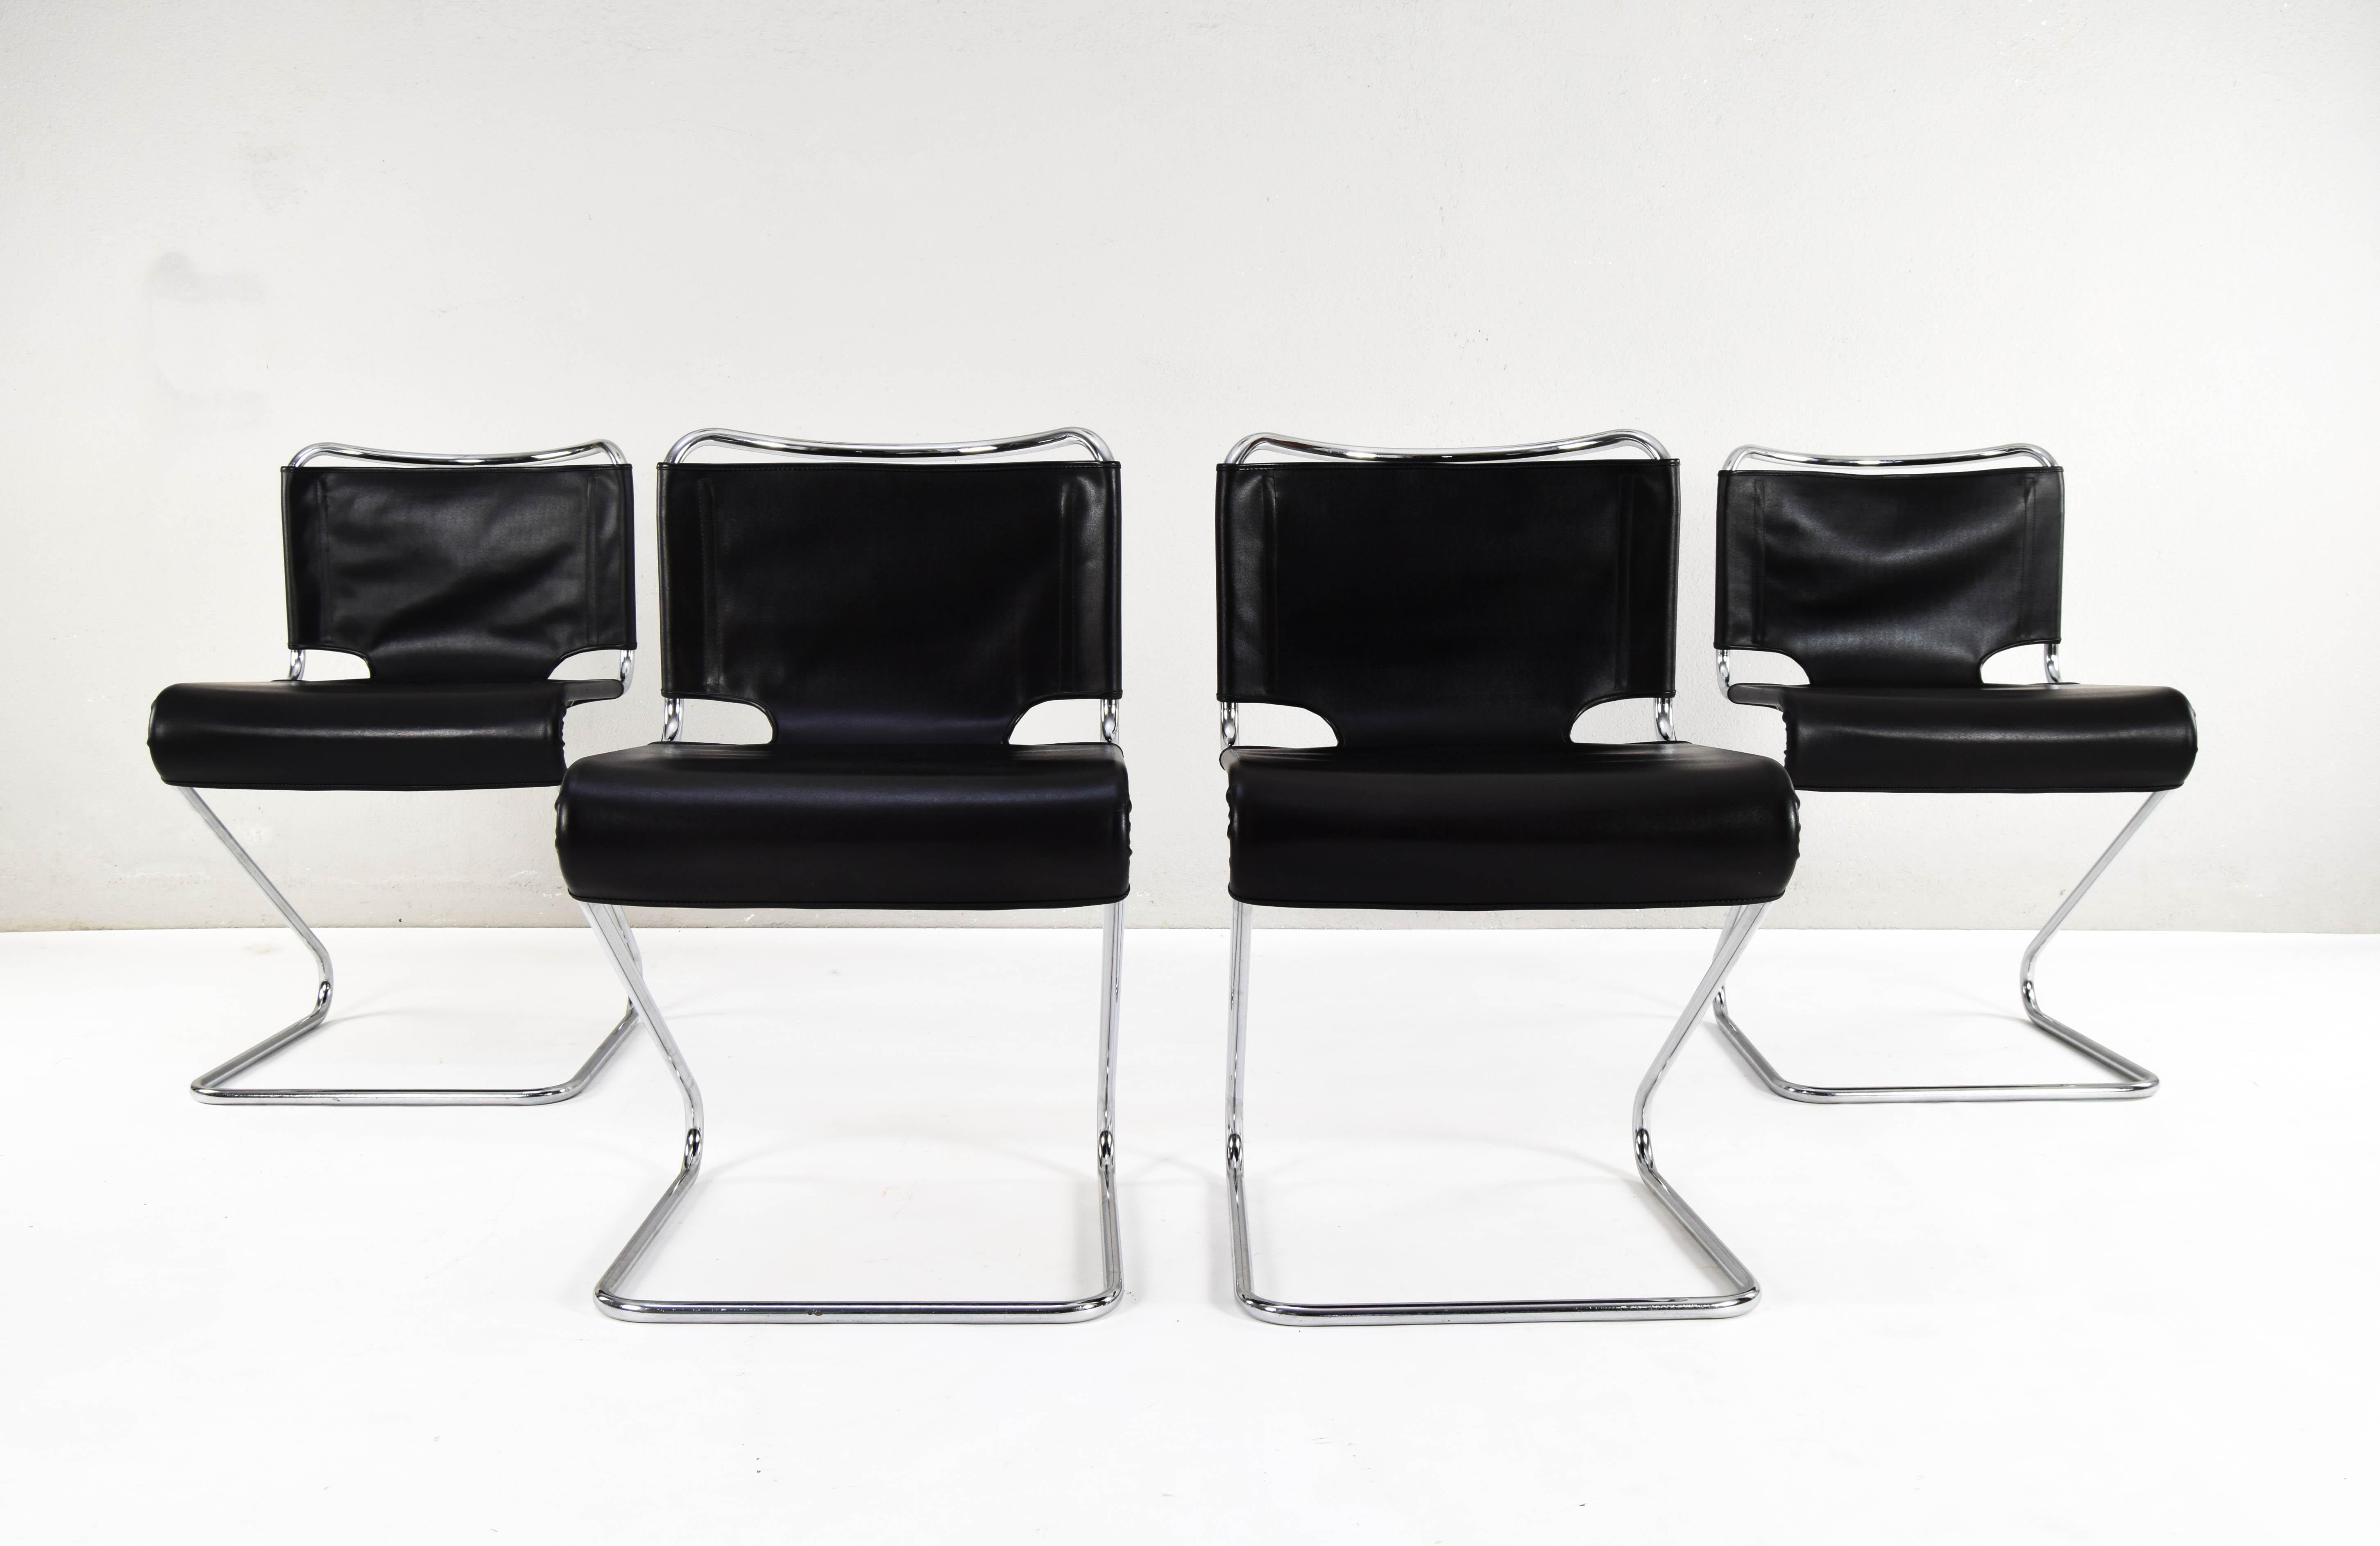 Pascal Mourgue pour Steiner, ensemble de 4 chaises de salle à manger empilables 'Biscia', acier, cuir vinyle, France. Conçue dans les années 60, cette édition appartient à la fin des années 60 ou au début des années 70.

Ensemble de quatre chaises